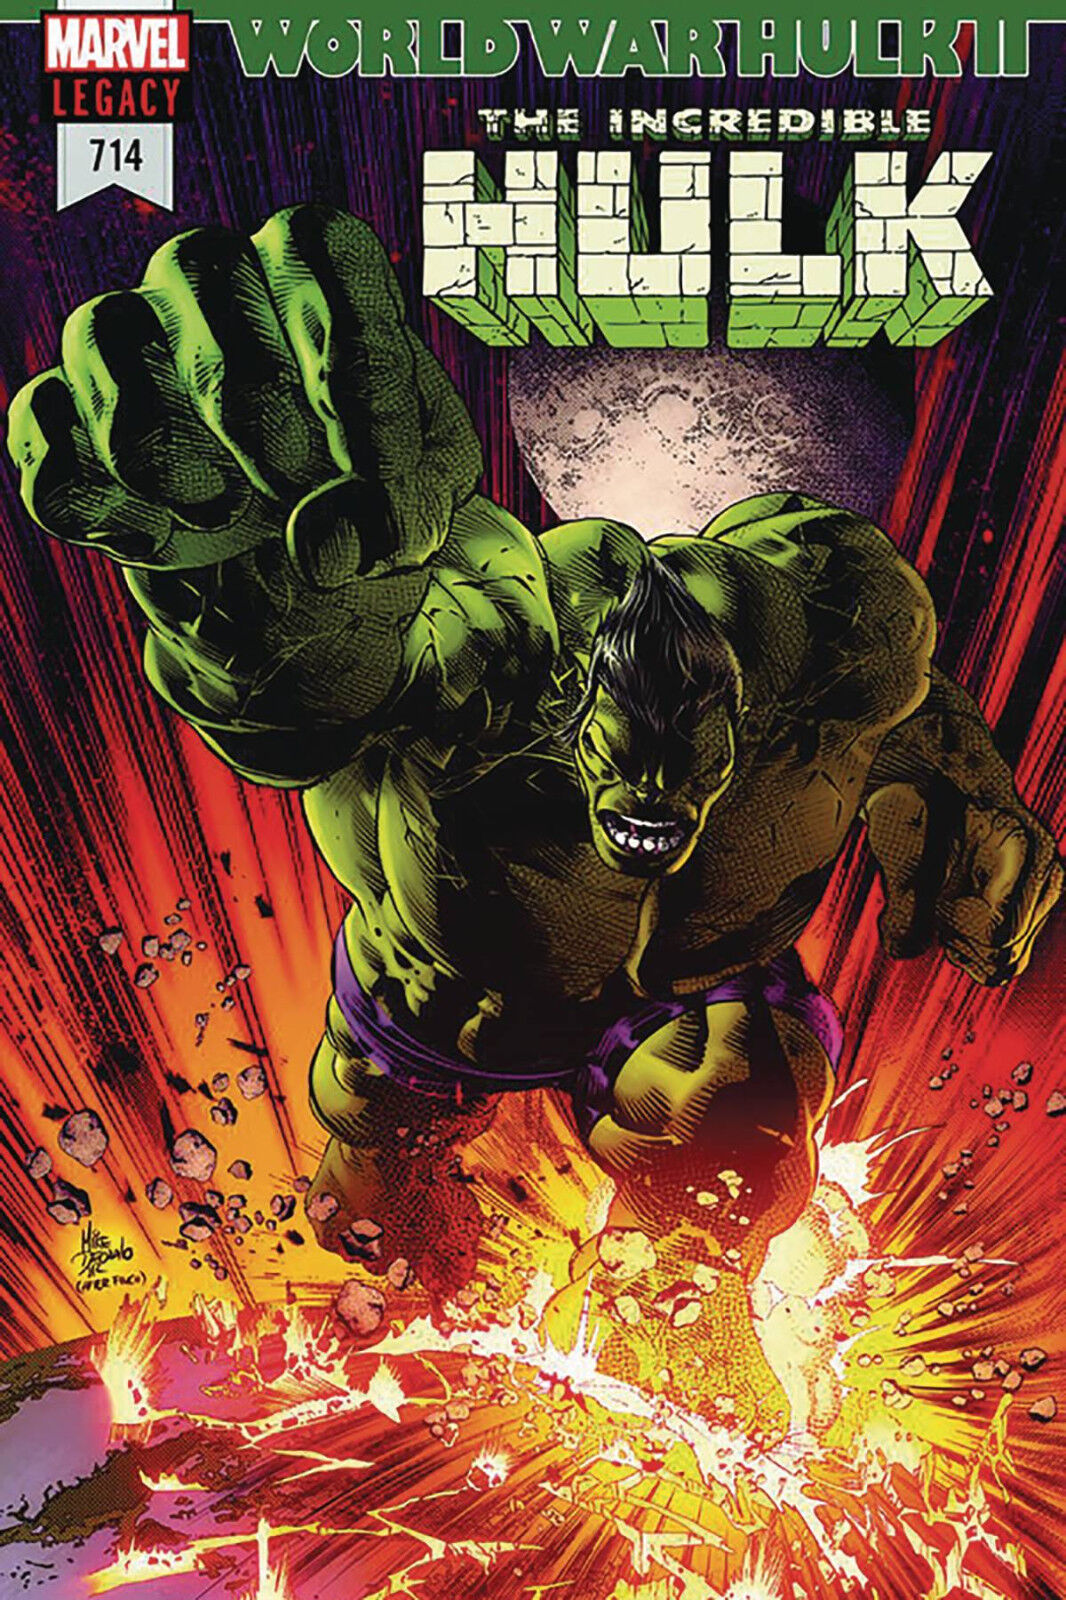 Incredible Hulk #714: The invisible Hulk